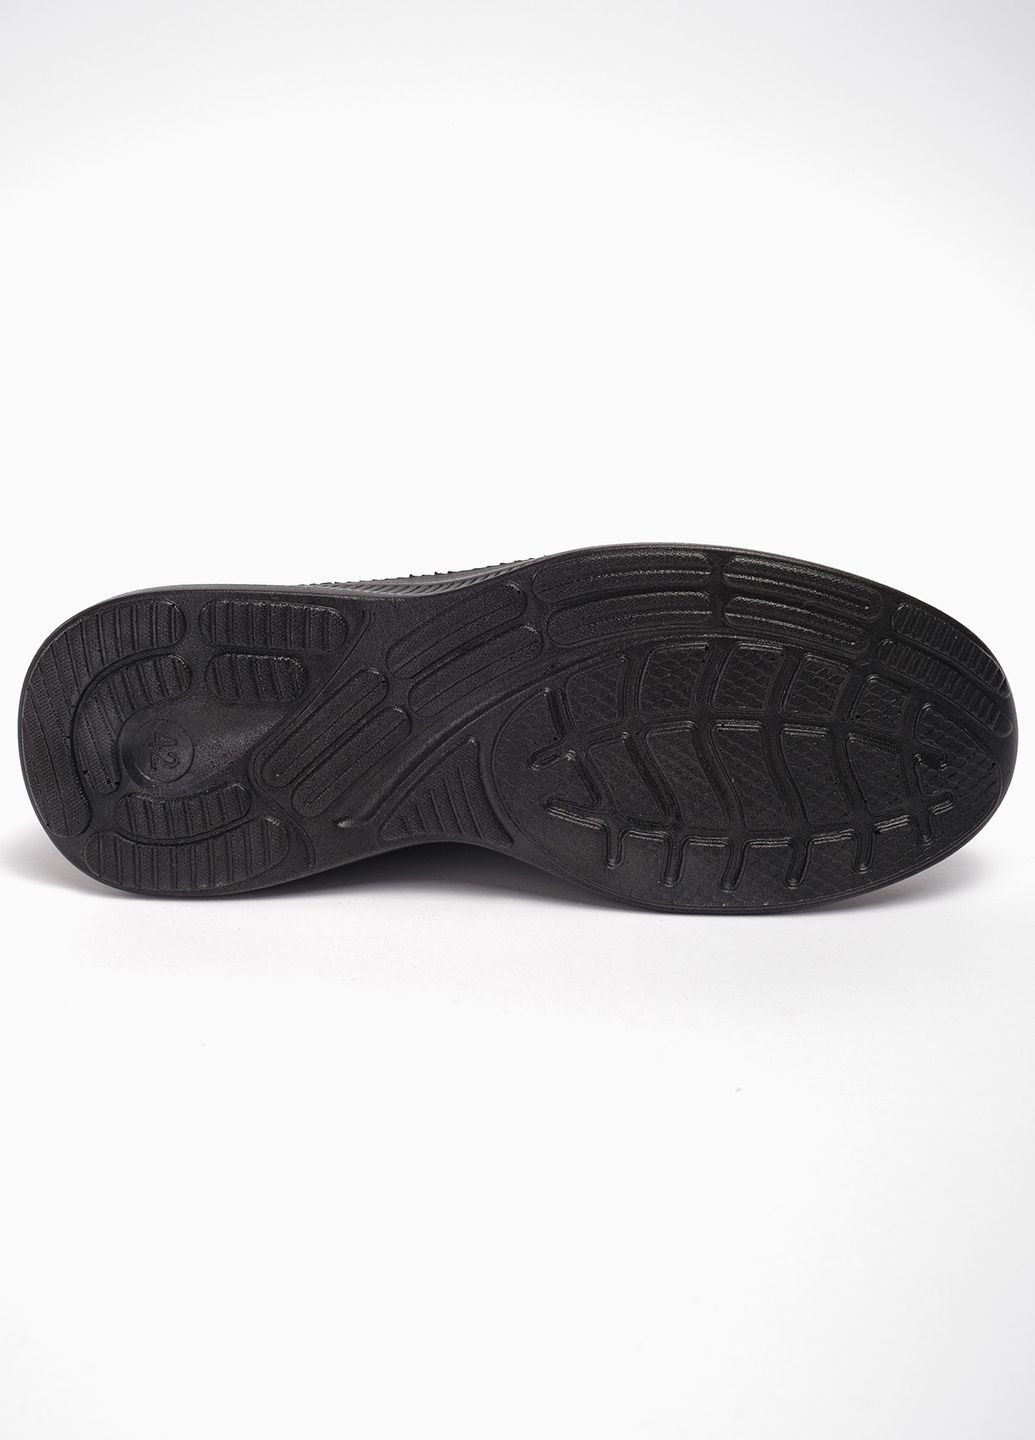 Черные летние кроссовки спорт m06-1 текстиль черный норма 342821 Power